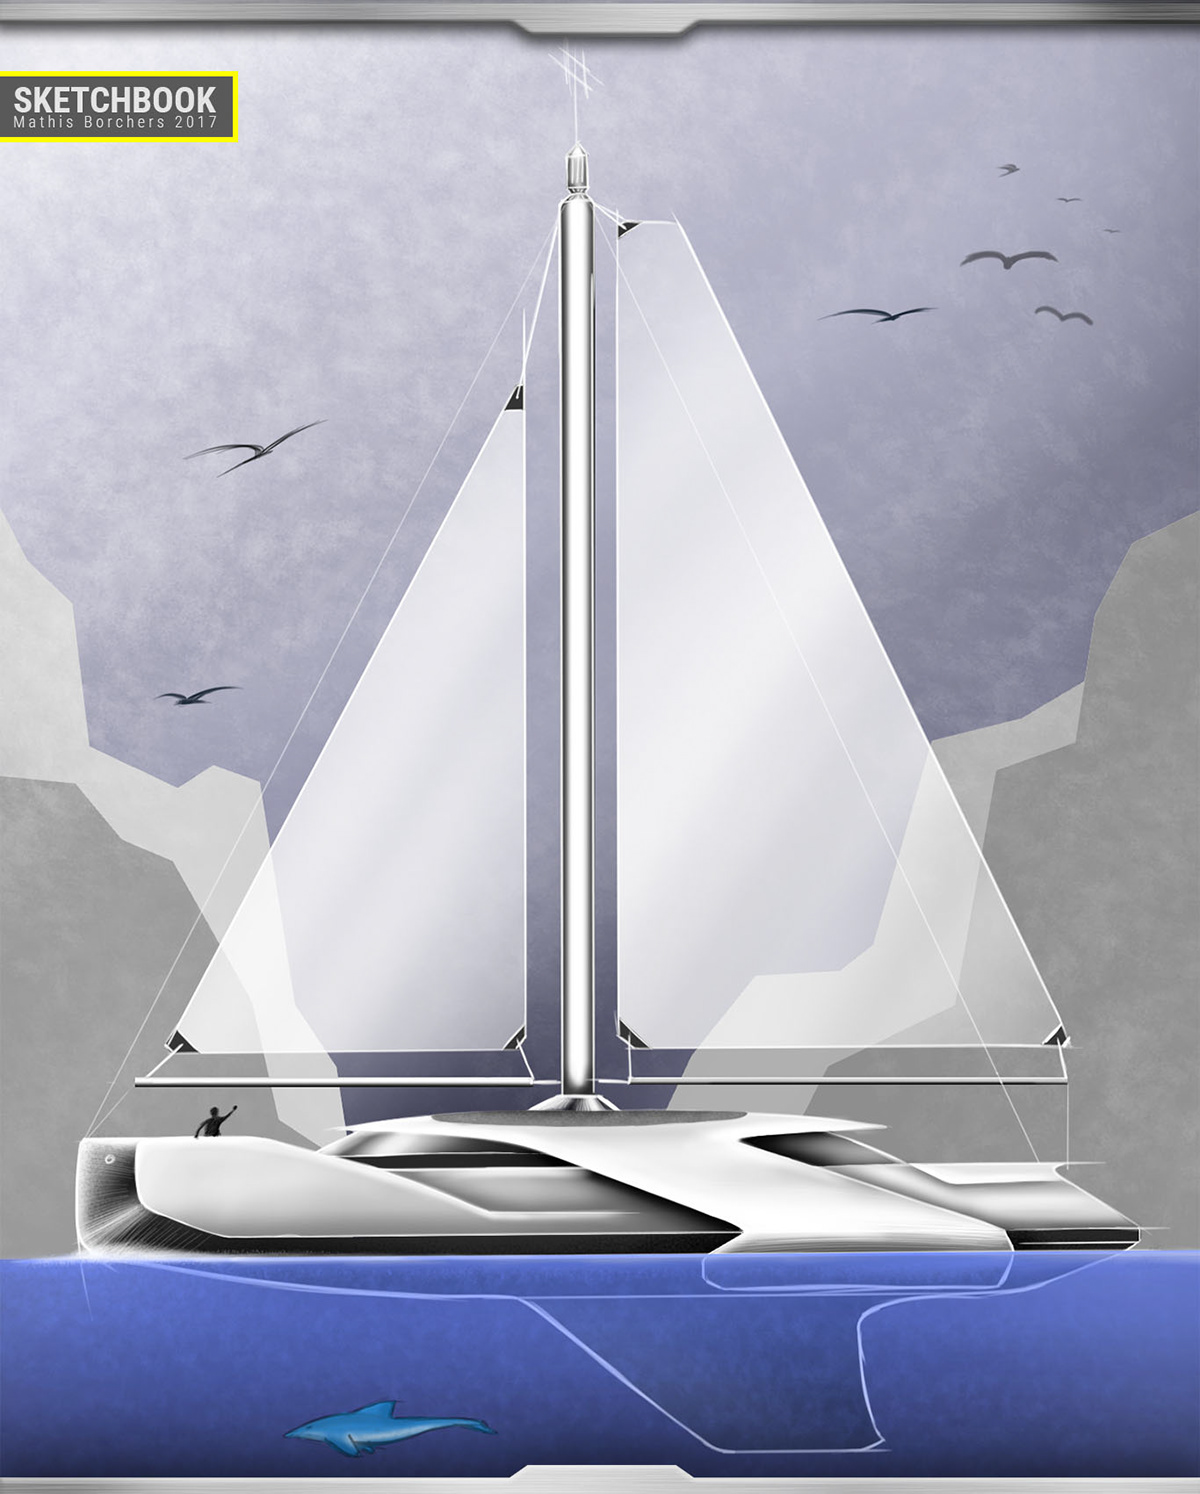 Transportation Design industriedesign Produktdesign sketch sketching car Sail Digital Sketch sketchbook portfolio